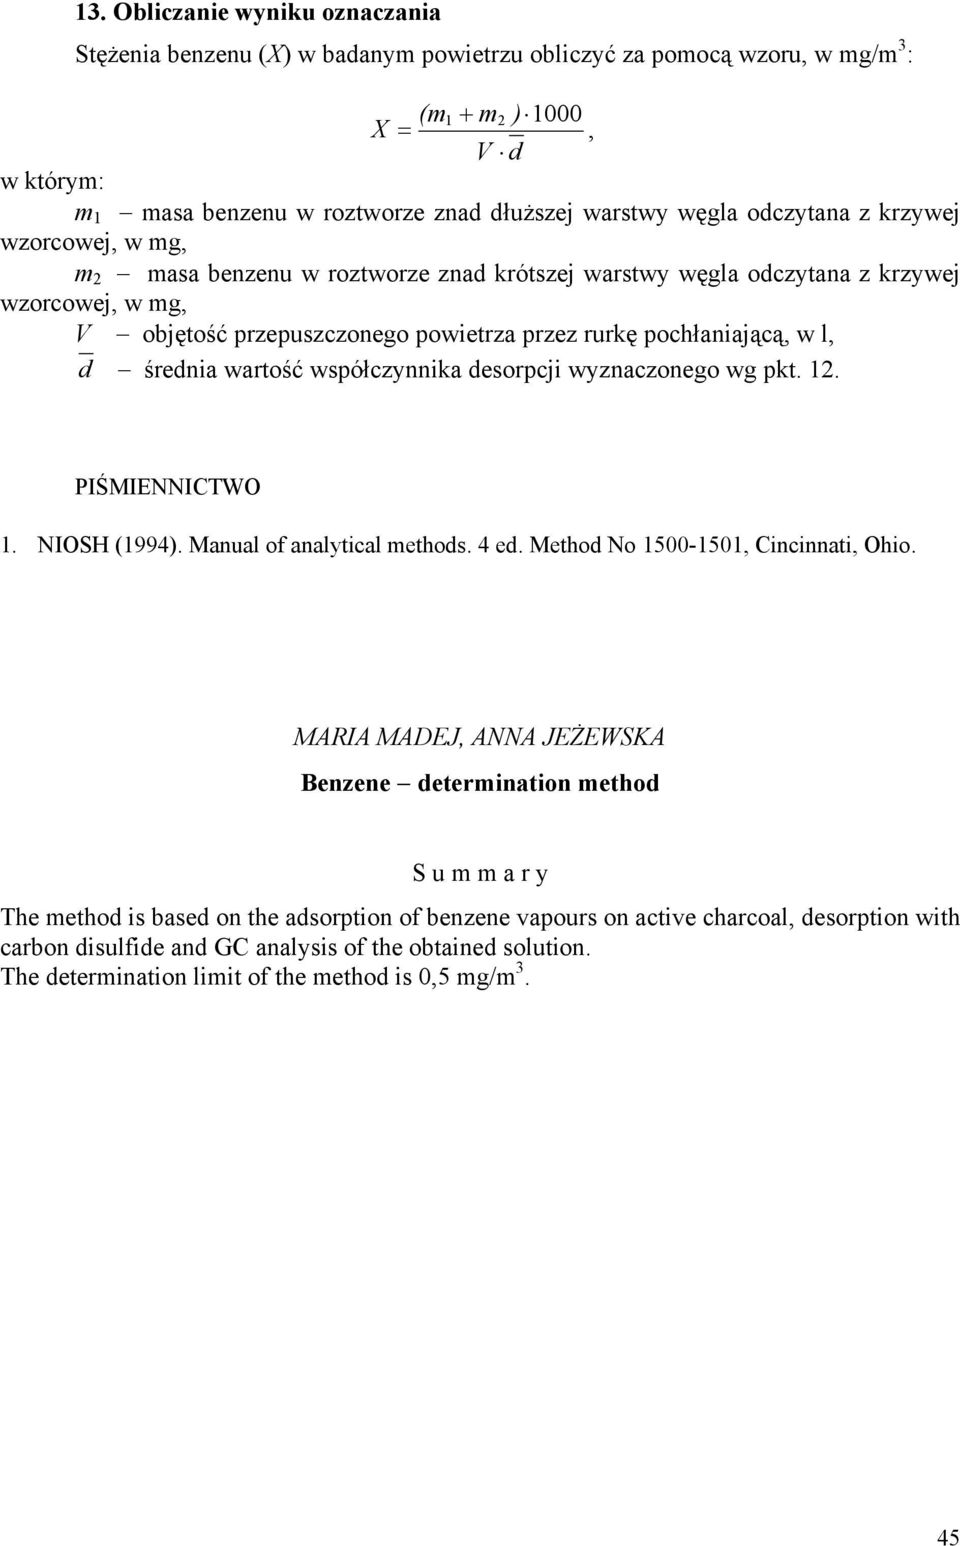 pochłaniającą, w l, d średnia wartość współczynnika desorpcji wyznaczonego wg pkt. 12. PIŚMIENNICTWO 1. NIOSH (1994). Manual of analytical methods. 4 ed. Method No 1500-1501, Cincinnati, Ohio.